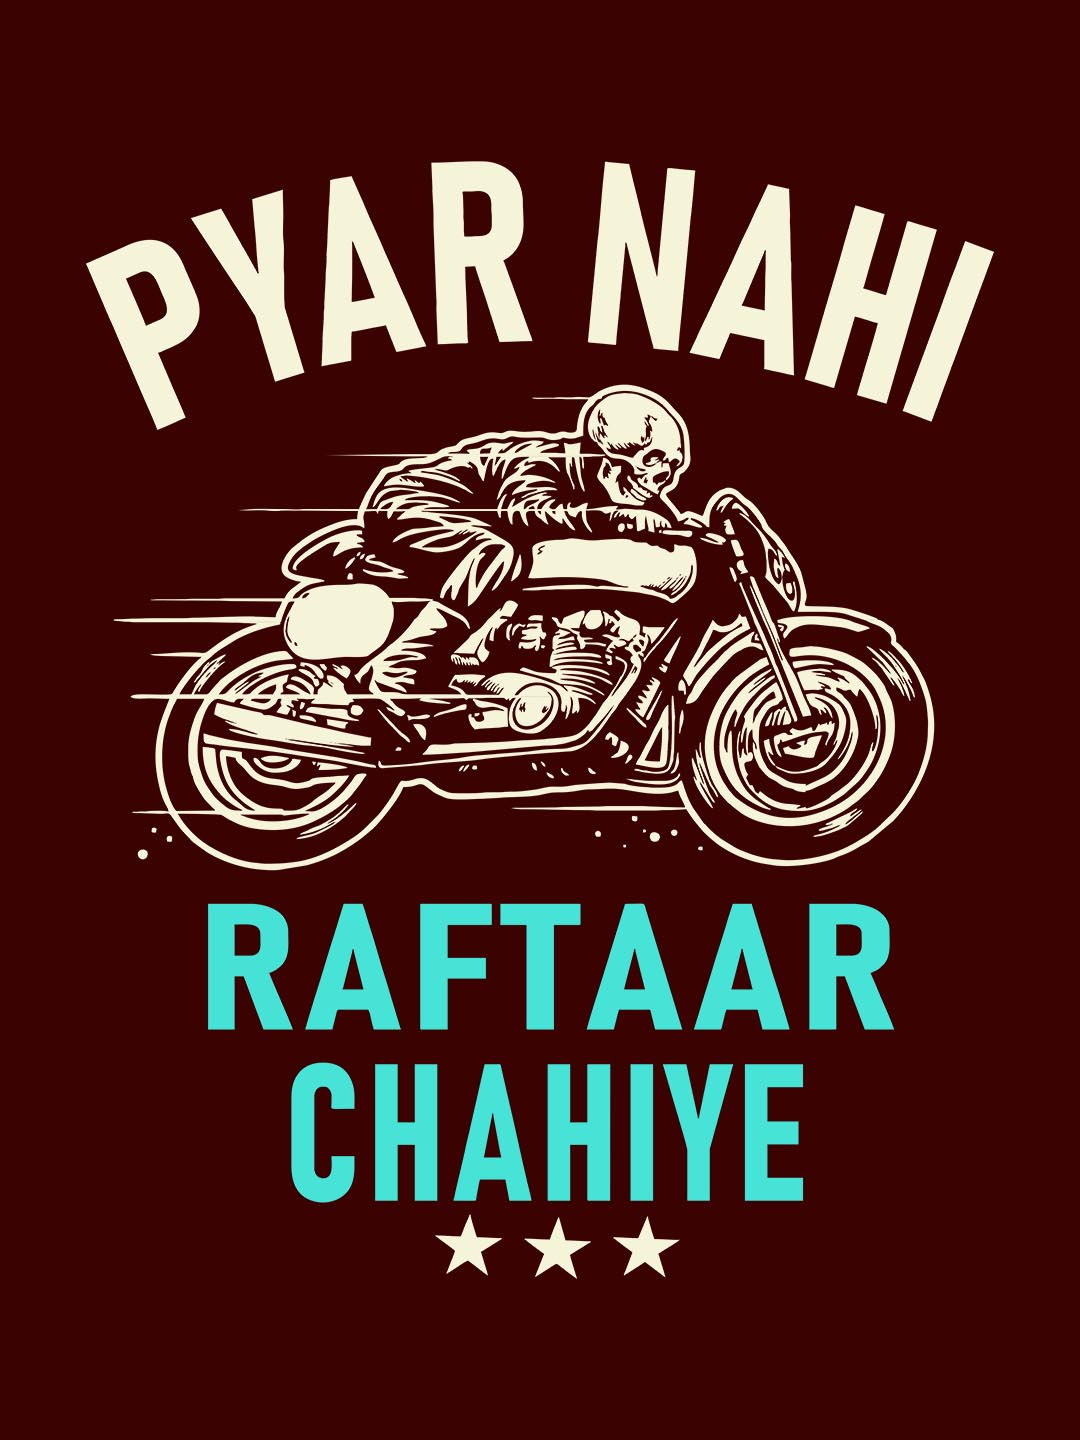 PYAAR NAHI RAFTAAR CHAHIYE BLACK T-SHIRT